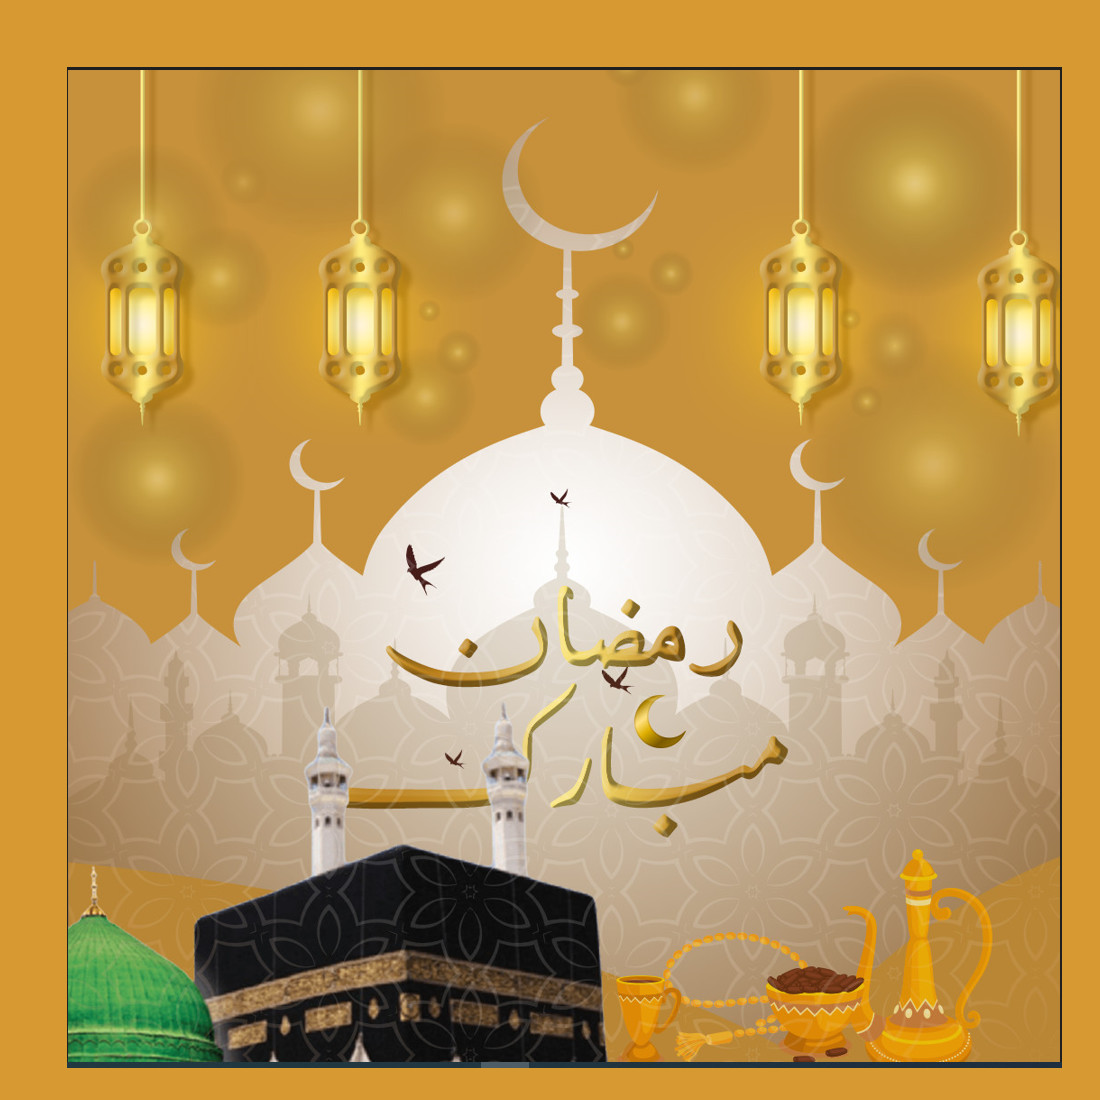 Ramadan MUbarak Social media Post design preview image.